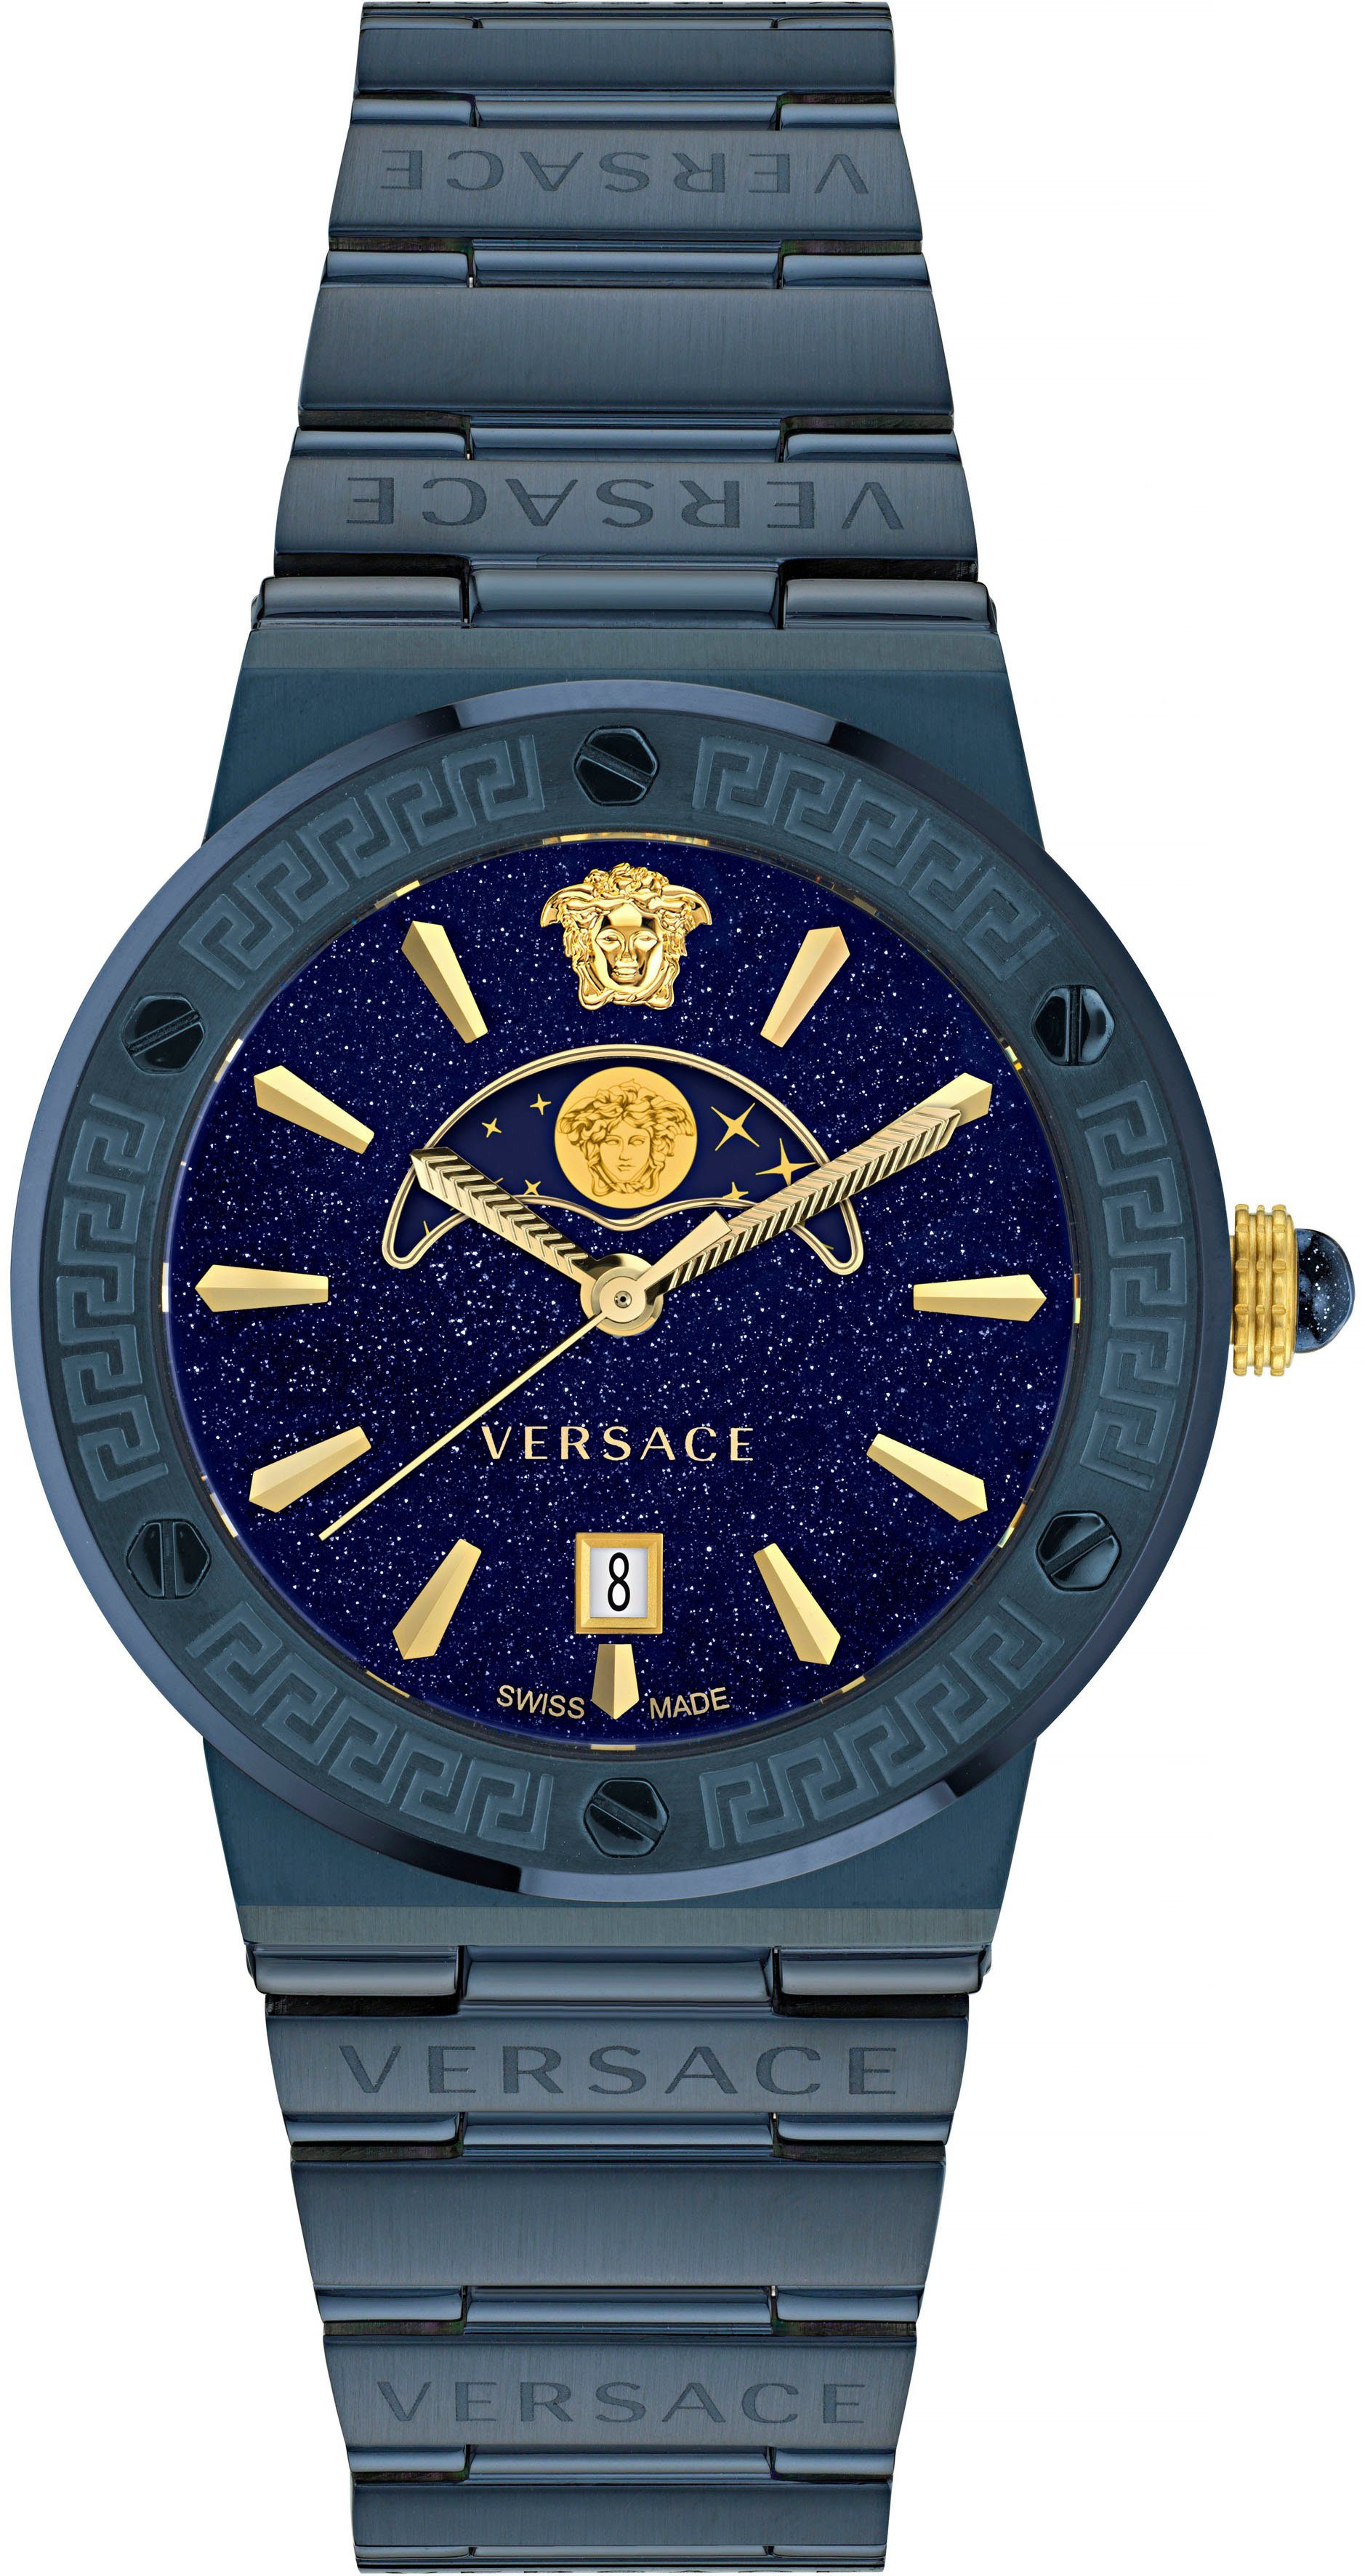 Armband blau Versace aus Quarzuhr LOGO Edelstahl MOONPHASE, IP-beschichtetem VE7G00423, GRECA